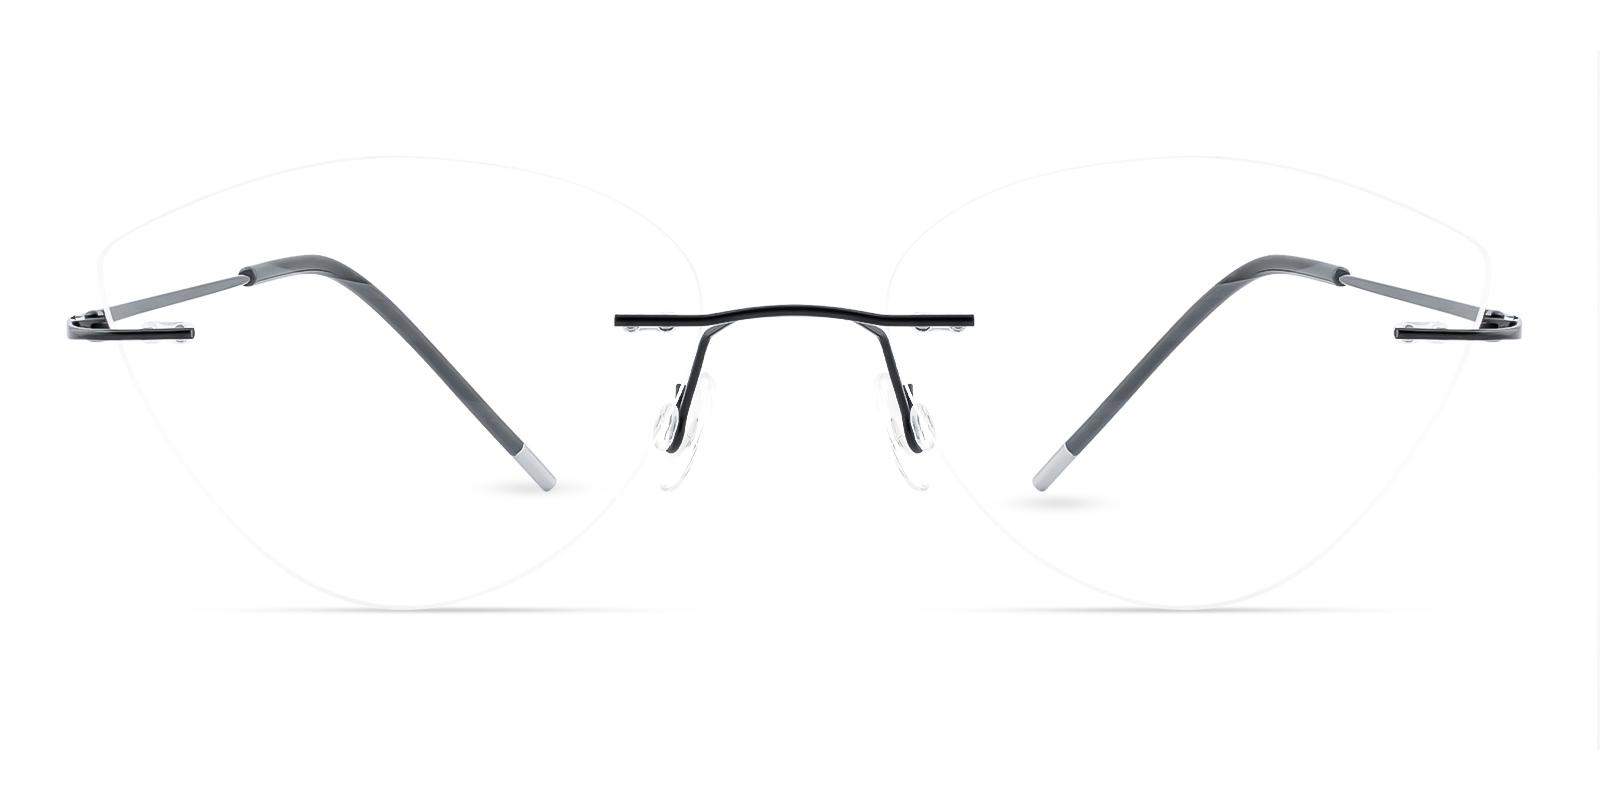 Huguenot Black Metal Eyeglasses , NosePads Frames from ABBE Glasses